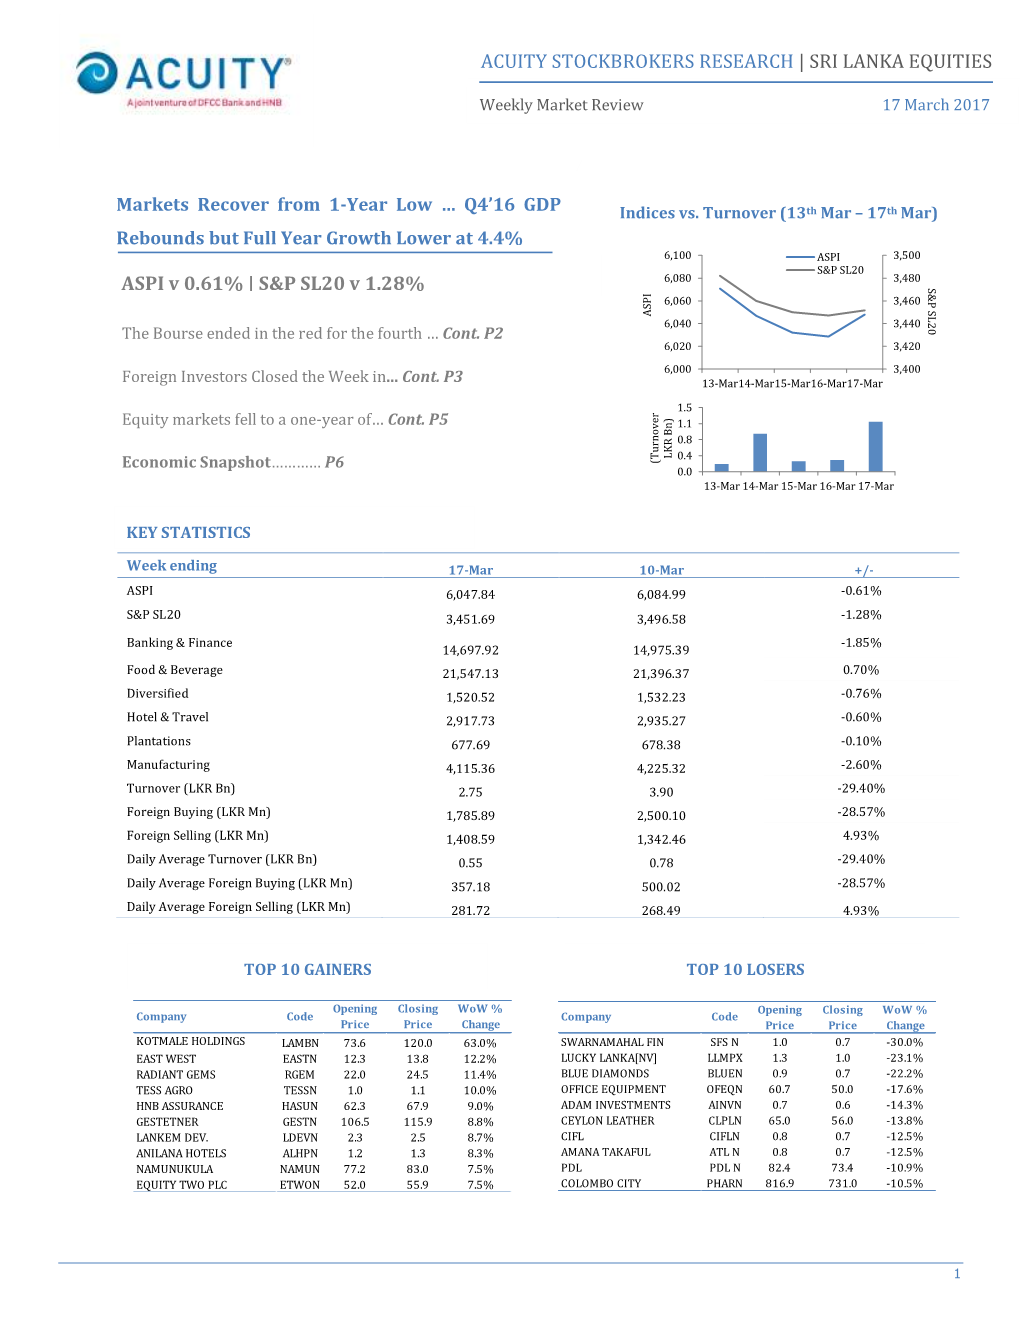 SRI LANKA EQUITIES ASPI V 0.61% | S&P SL20 V 1.28%